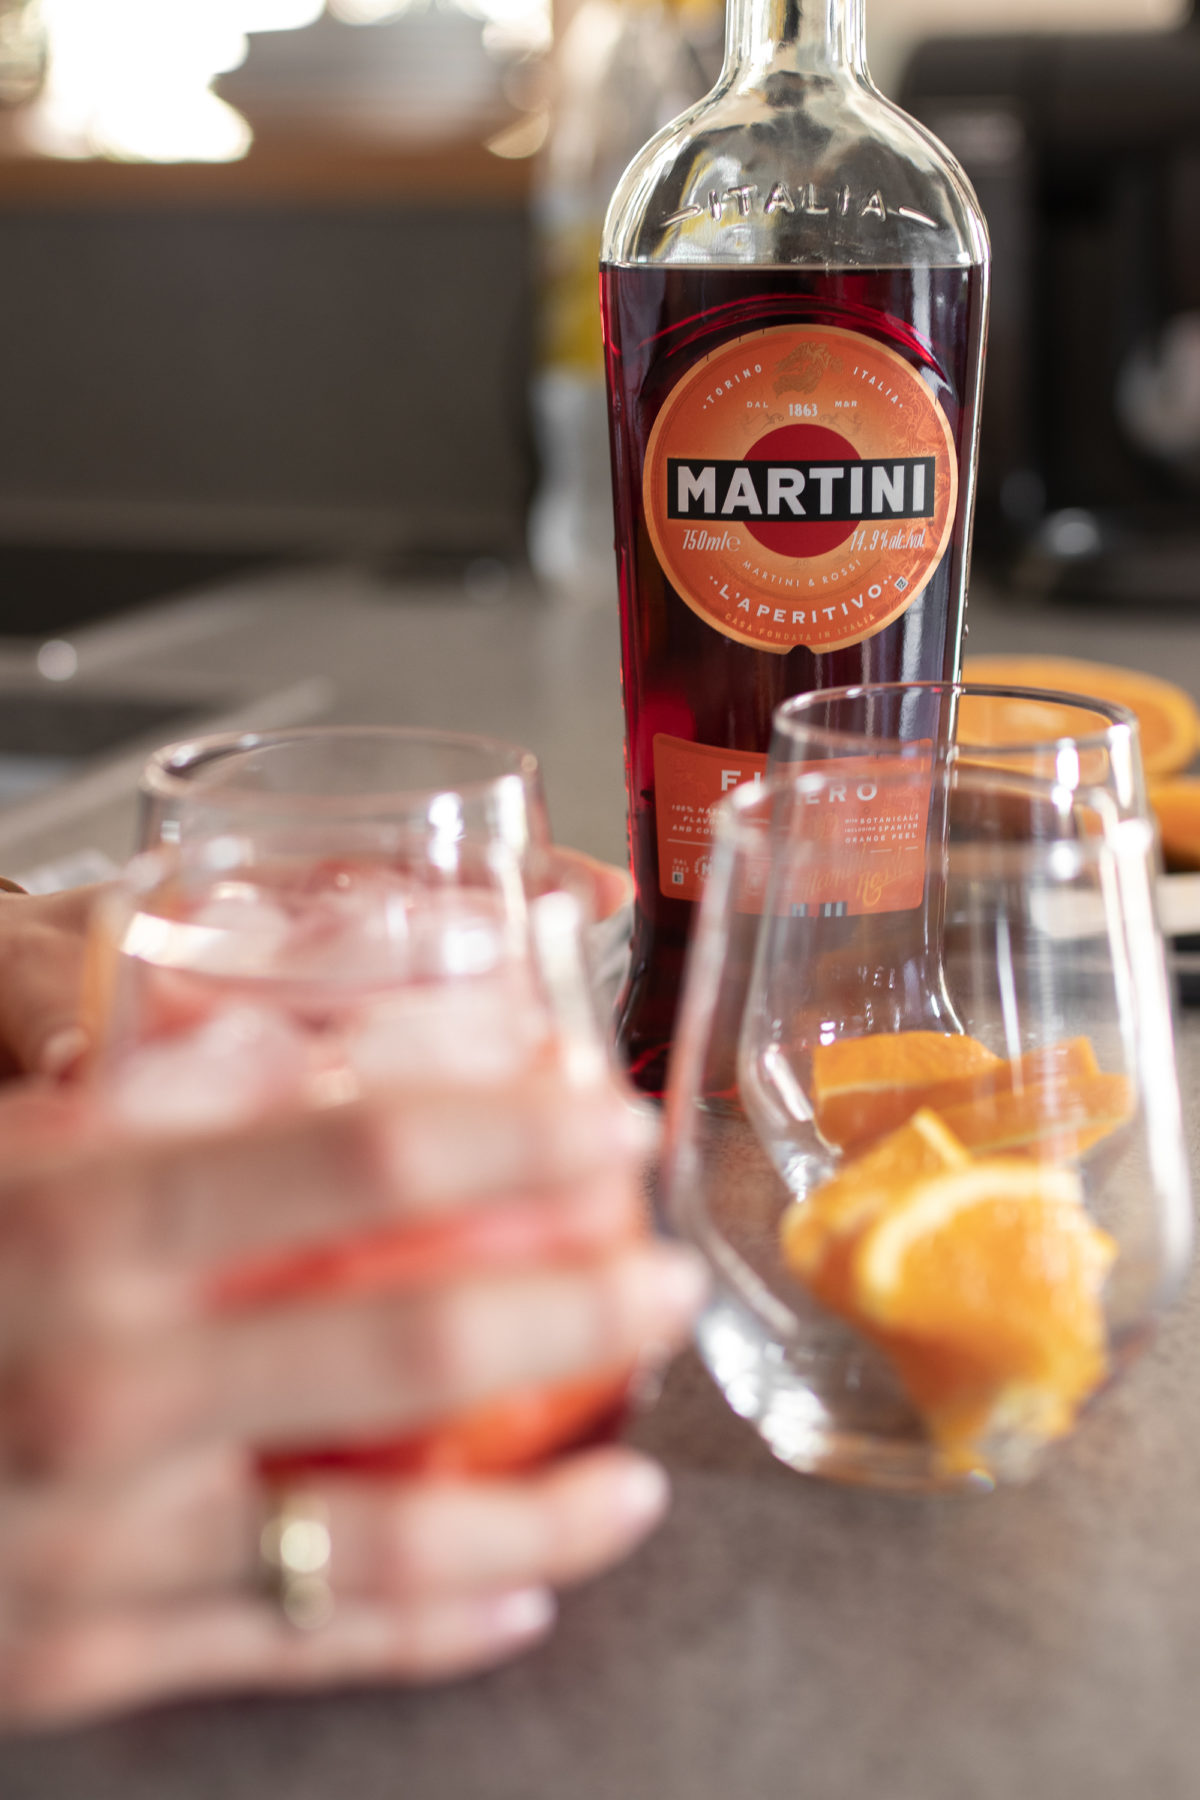 Aperitivo Genuss: Martini Fiero auf dem österreichischen Lifestyle Blog Bits and Bobs by Eva. Mehr Drinks und Rezepte auf www.bitsandbobsbyeva.com